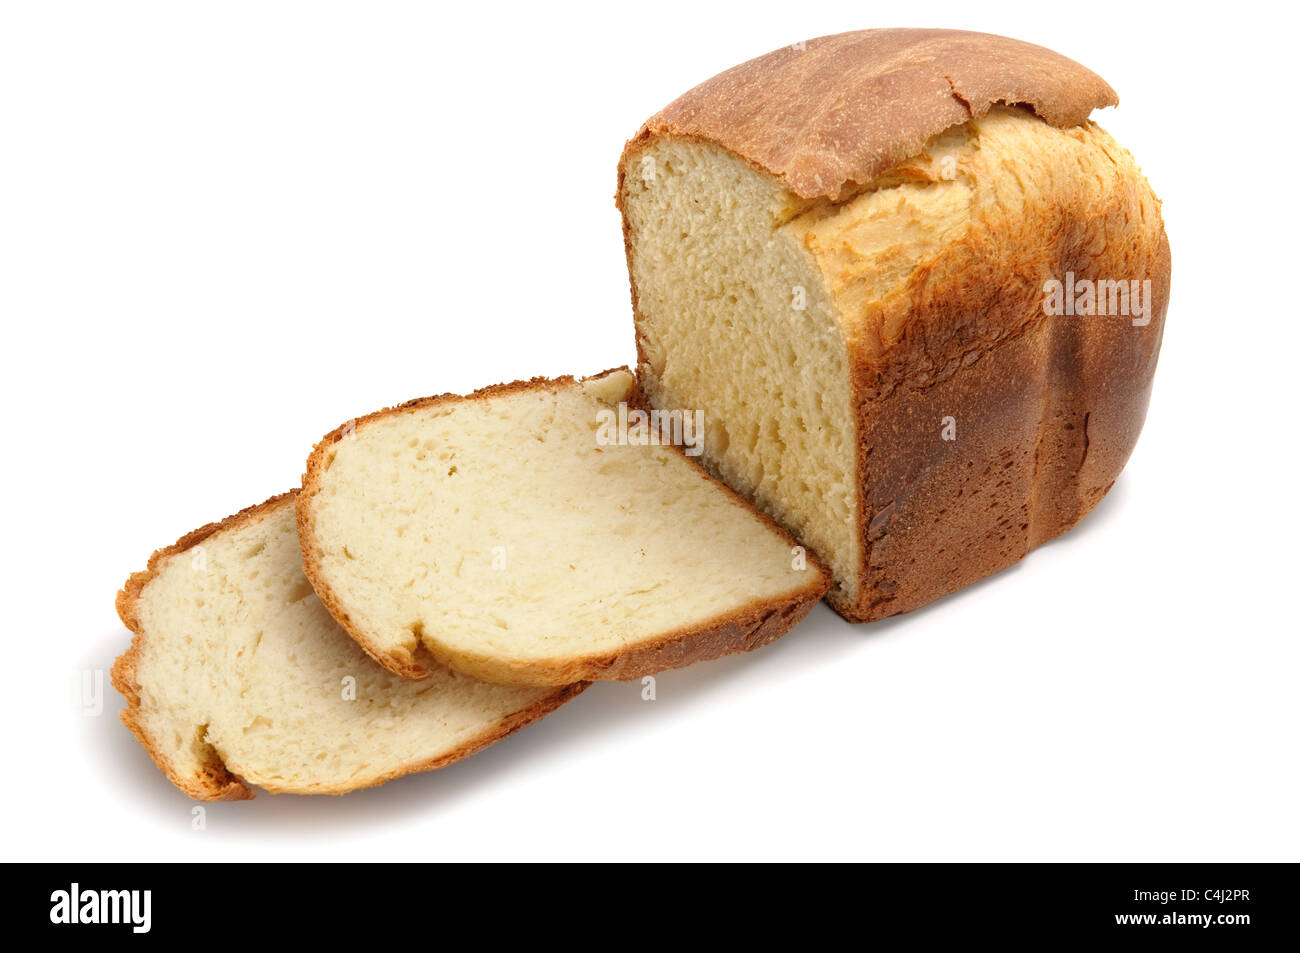 Miche de pain fait maison isolated on white Banque D'Images